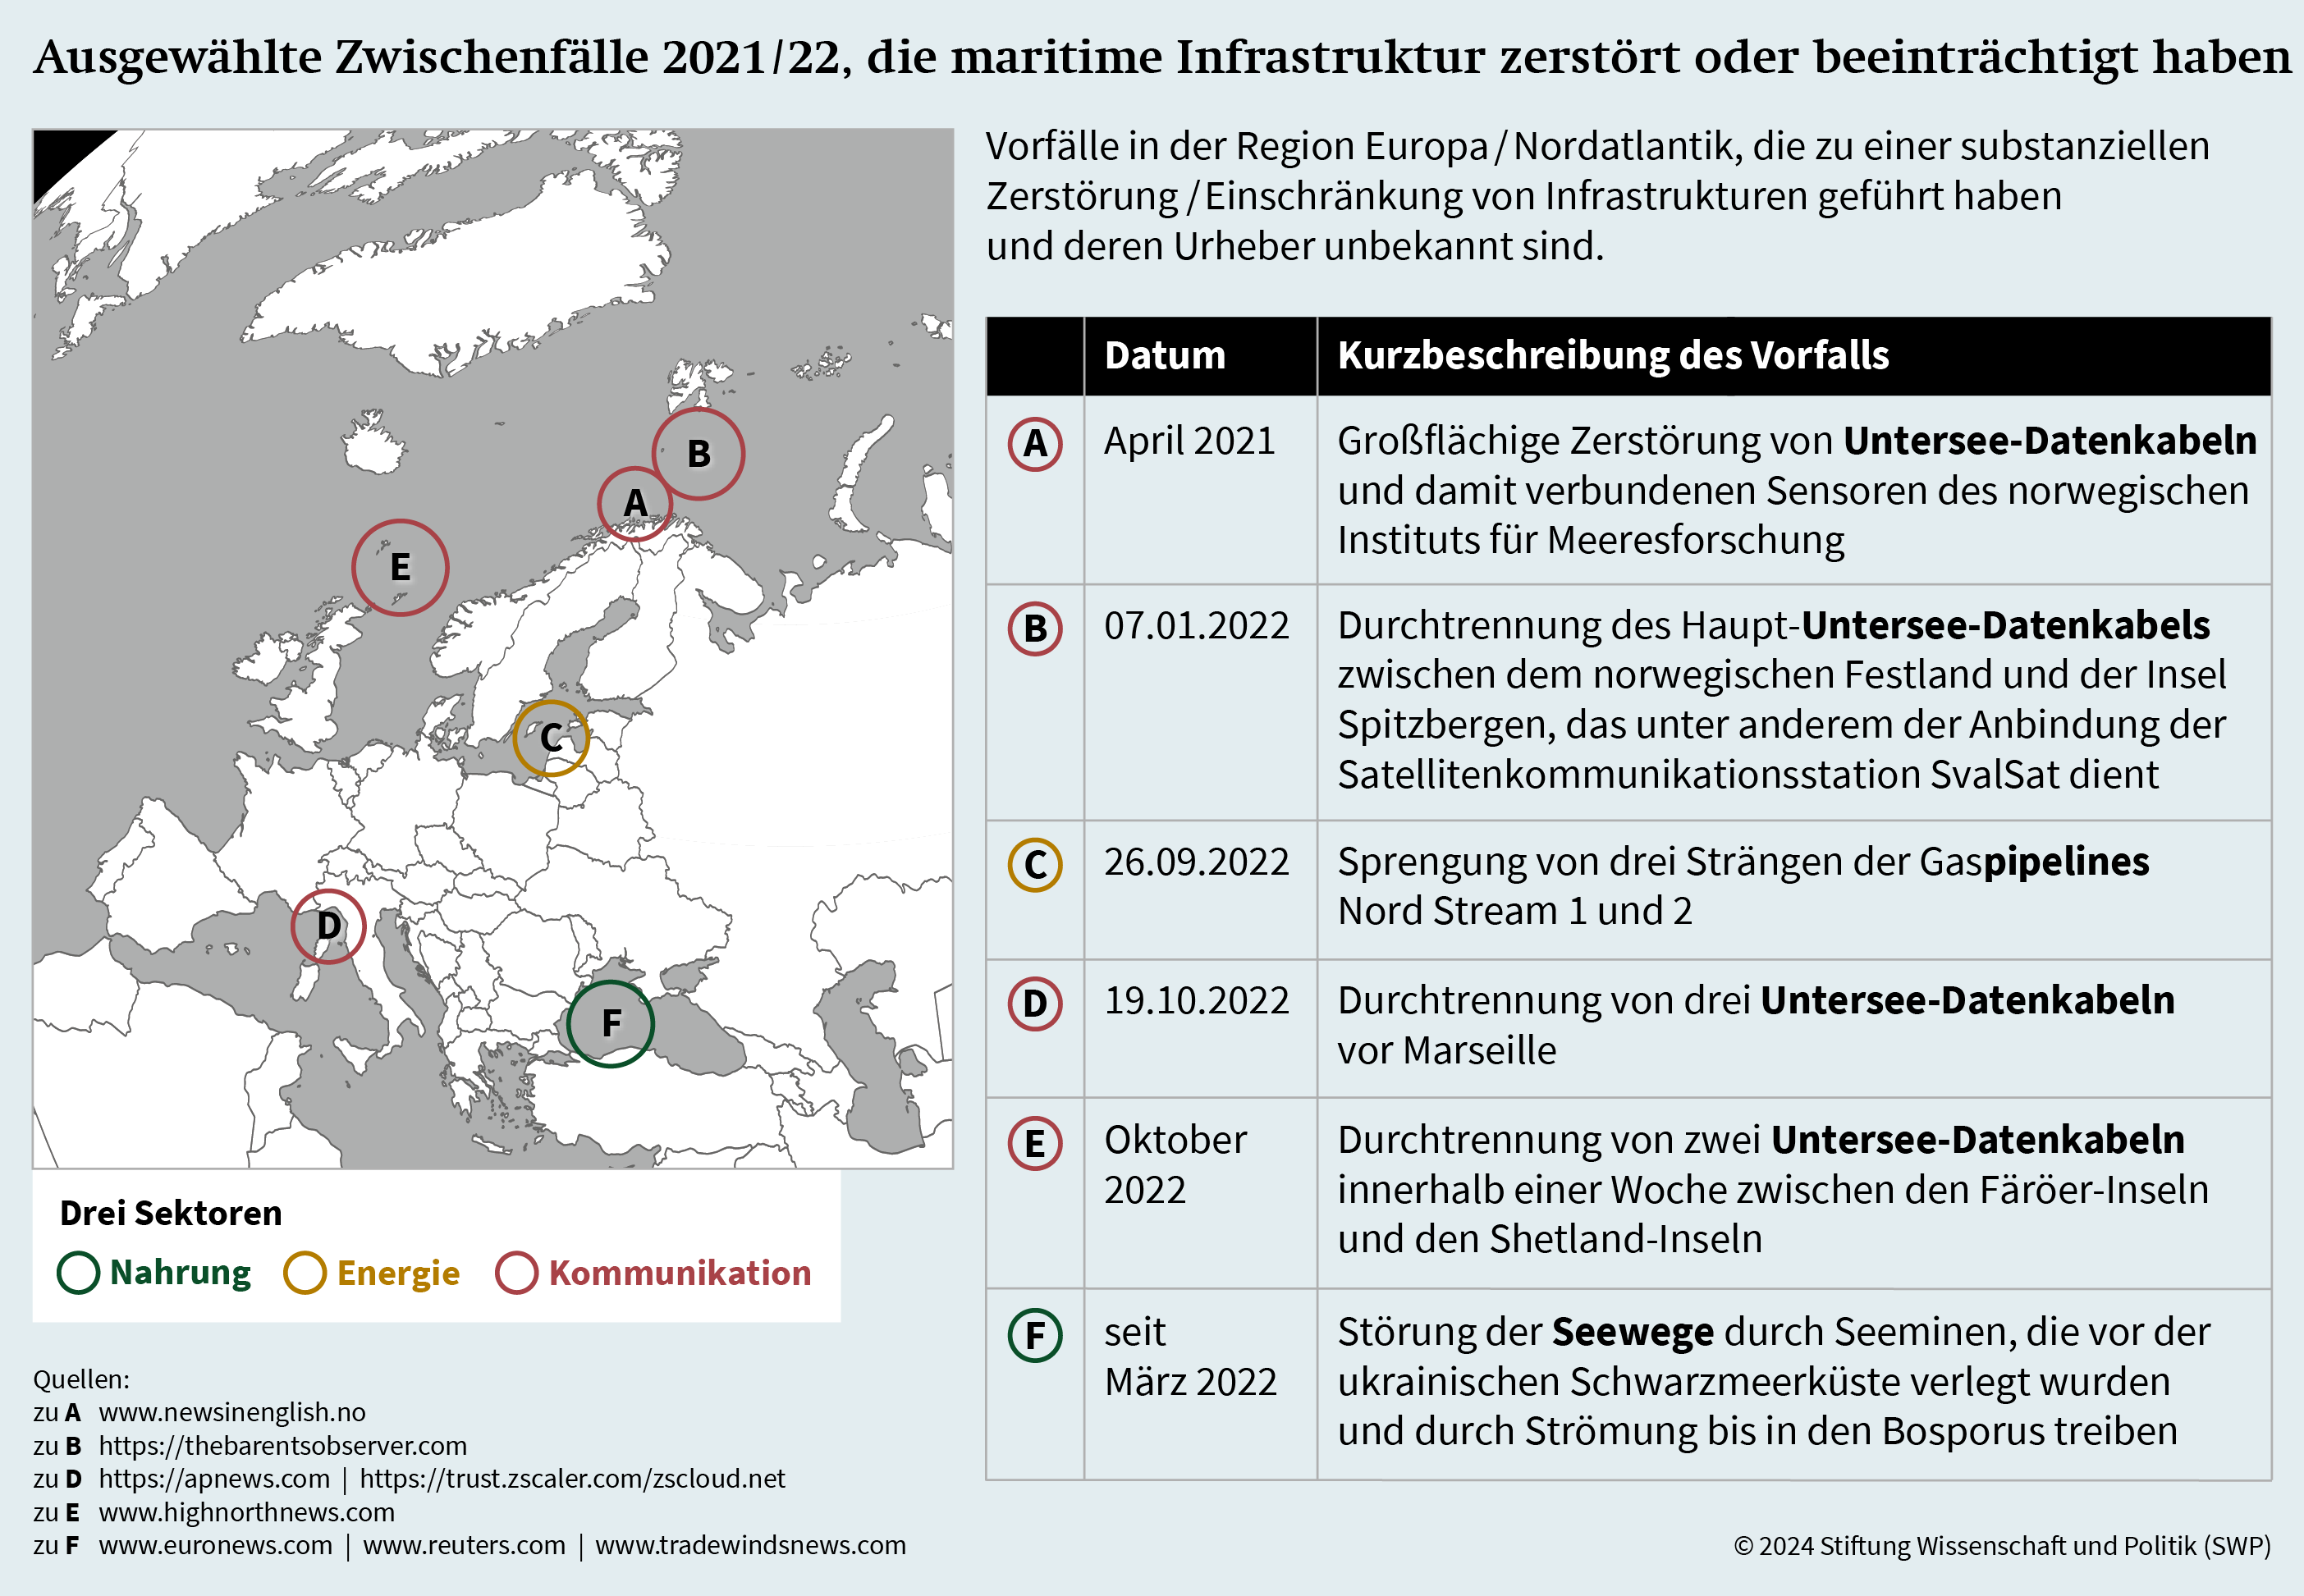 Abbildung: Ausgewählte Zwischenfälle 2021/22, die maritime Infrastruktur zerstört oder beeinträchtigt haben